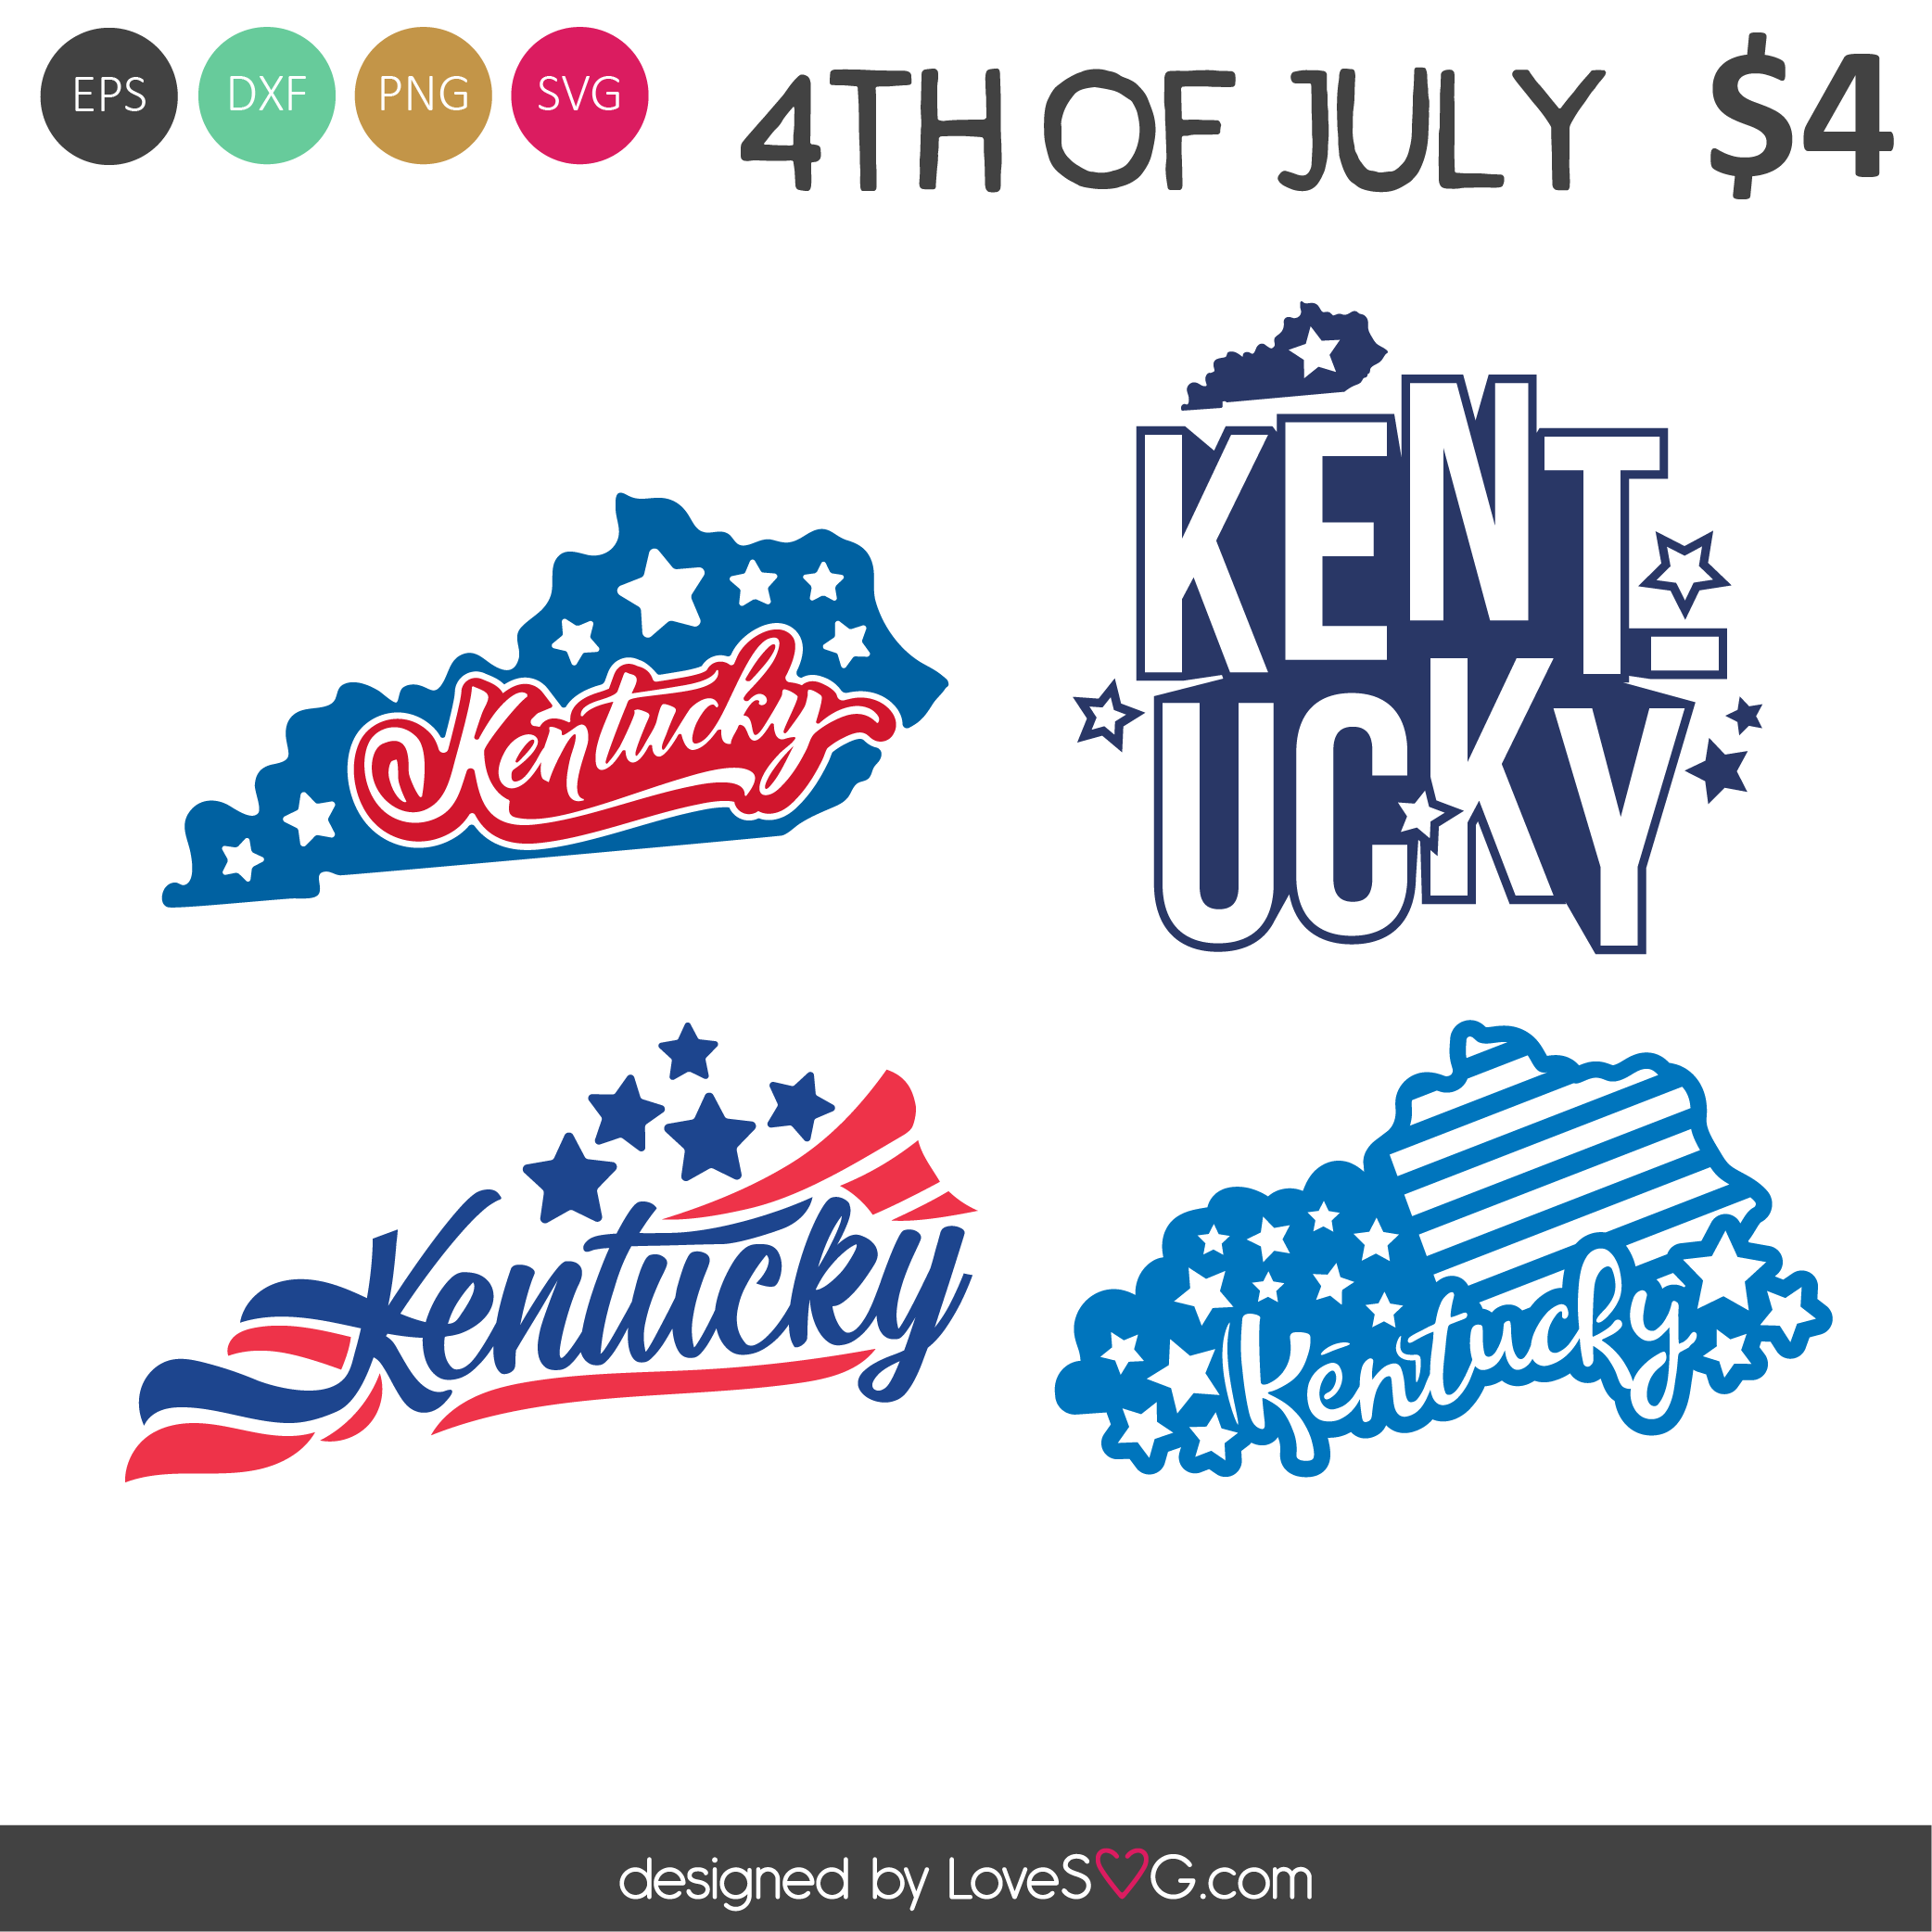 Kentucky SVG Cut Files - Lovesvg.com